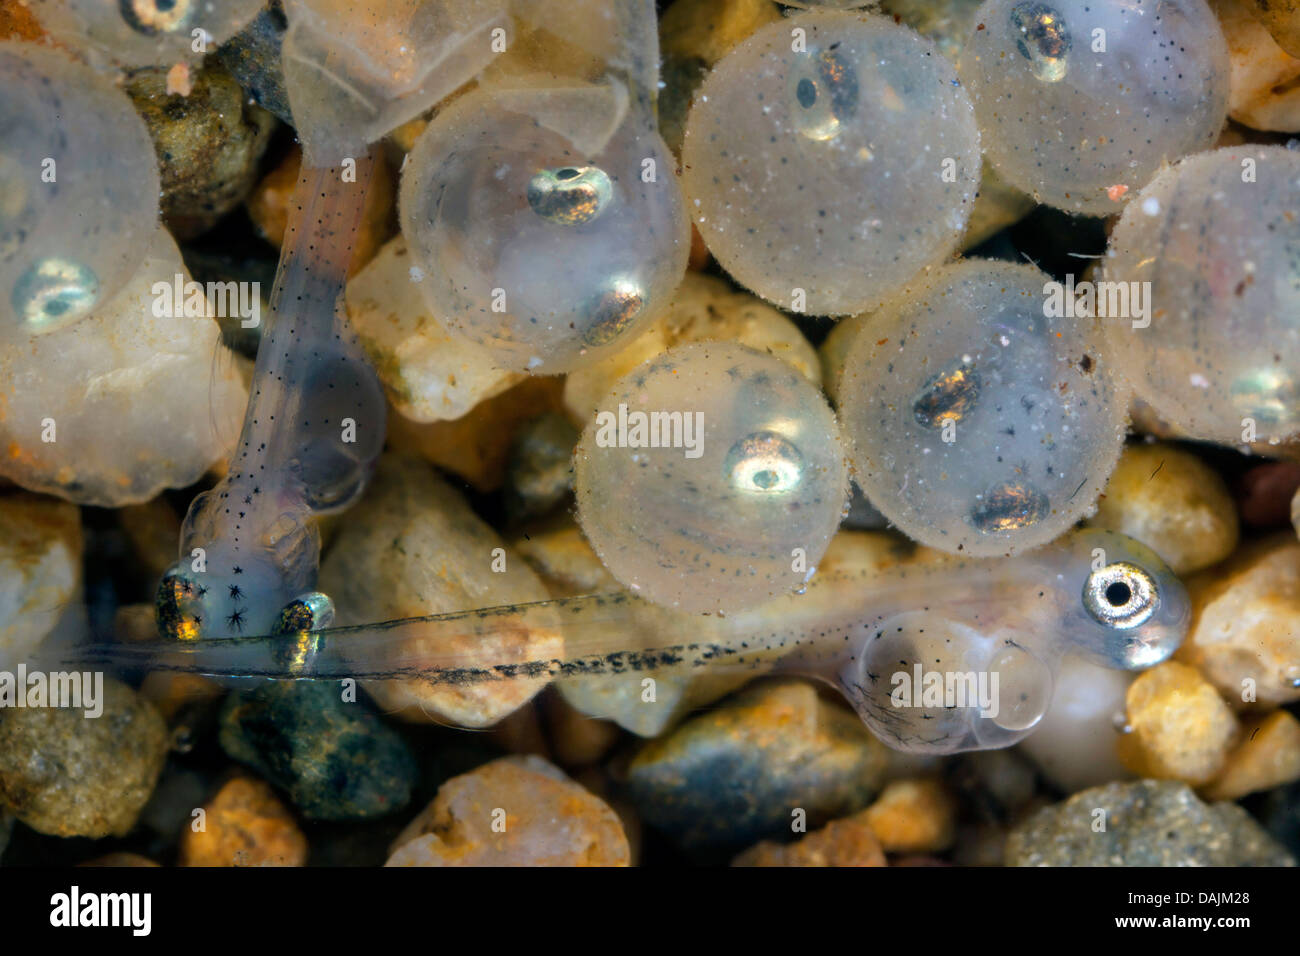 whitefishes, lake whitefishes (Coregonus spec.), eggs and hatched larvae Stock Photo